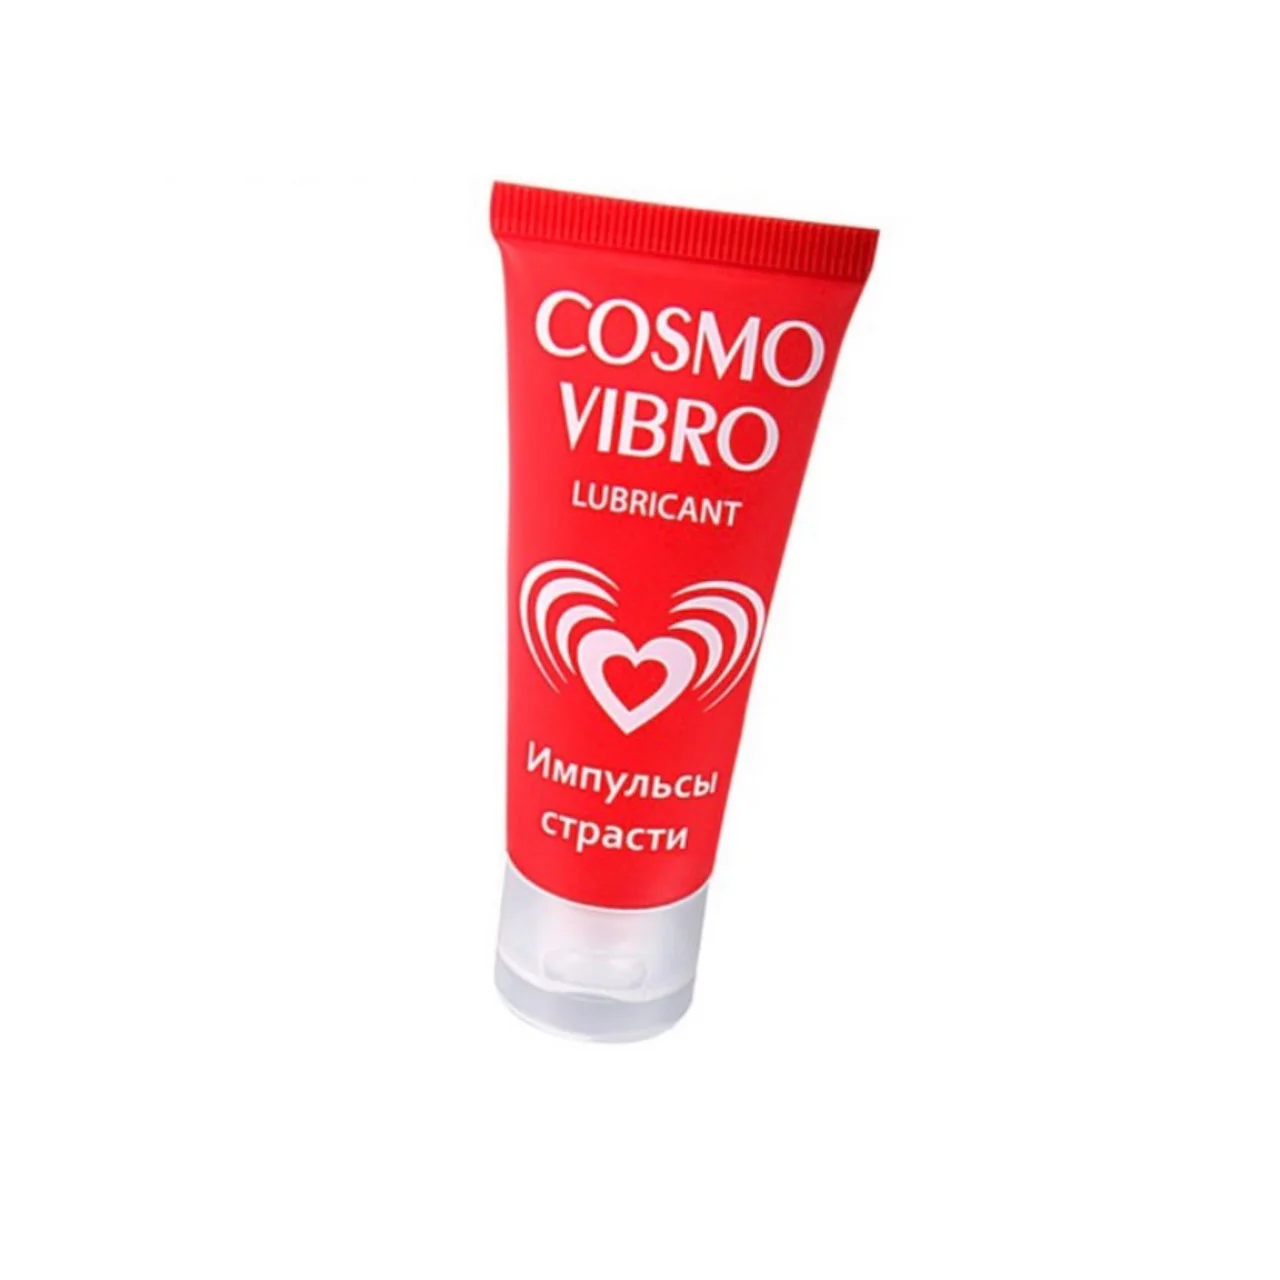 Смазки для женщин в аптеках. Смазка Cosmo Vibro. Лубрикант Космо вибро. Гель-смазка Биоритм Cosmo Vibro. Возбуждающий силиконовый любрикант Cosmo Vibro 3 мл.